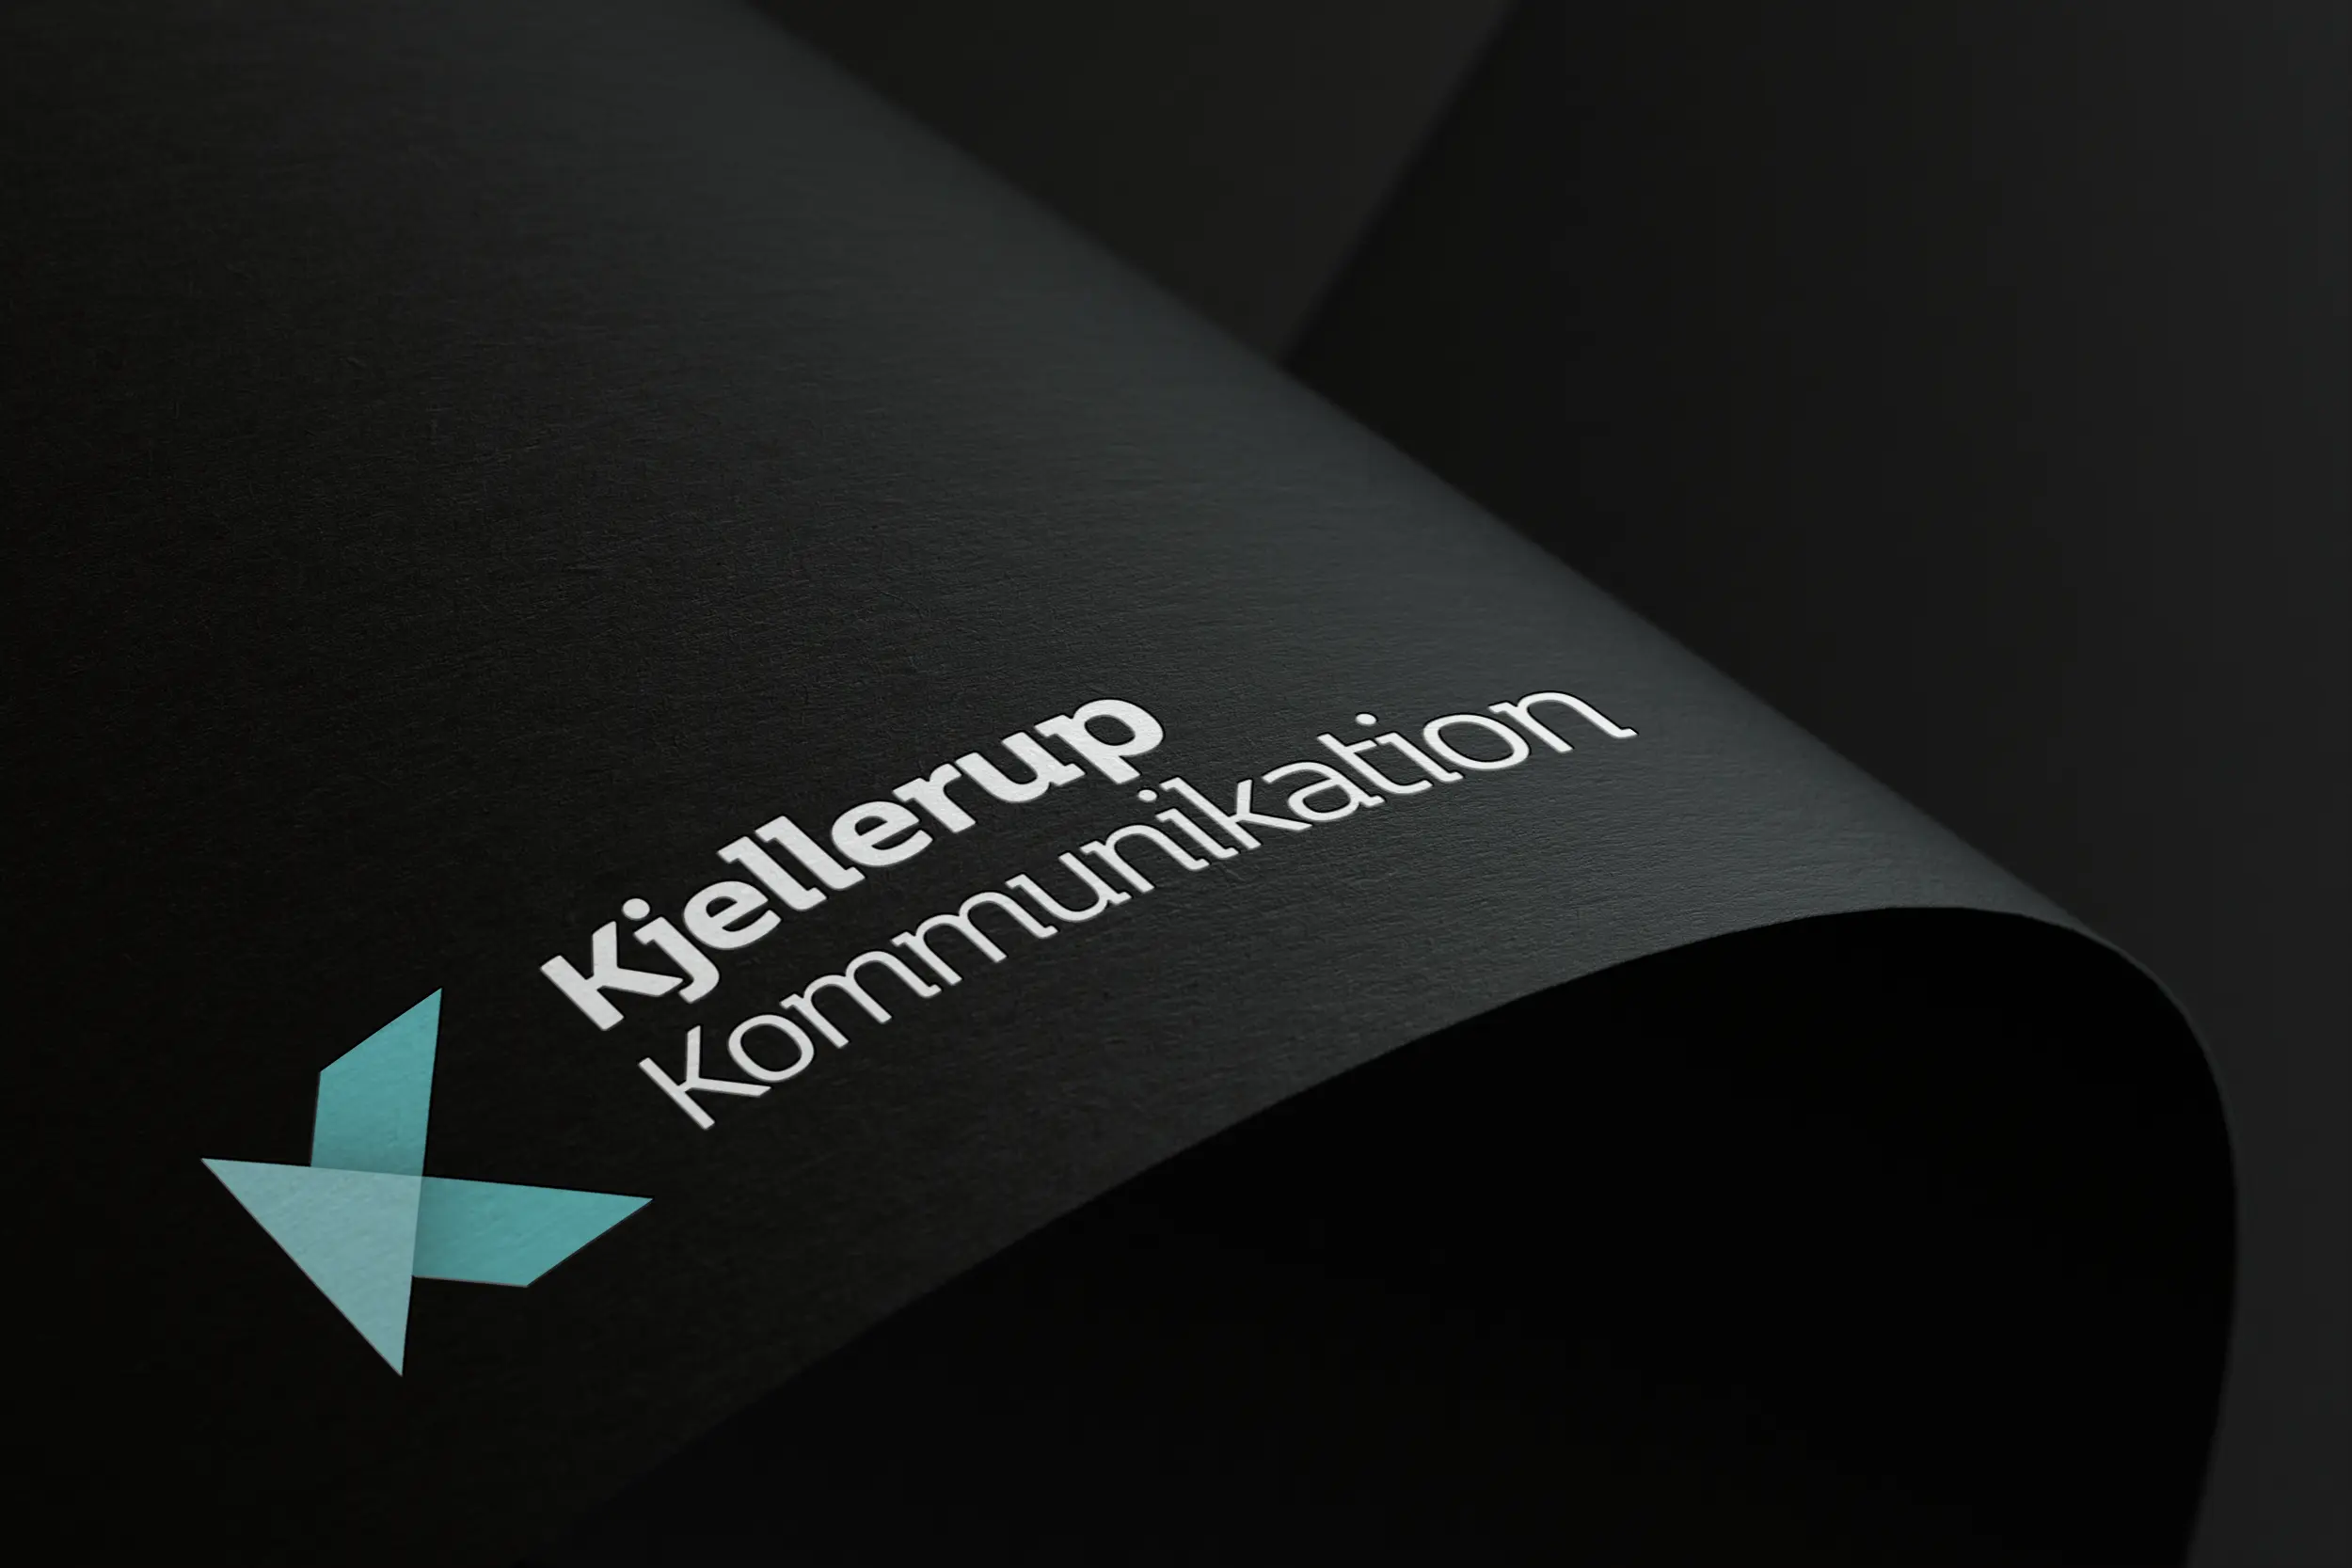 Kjellerup Kommunikations logo på sort papir